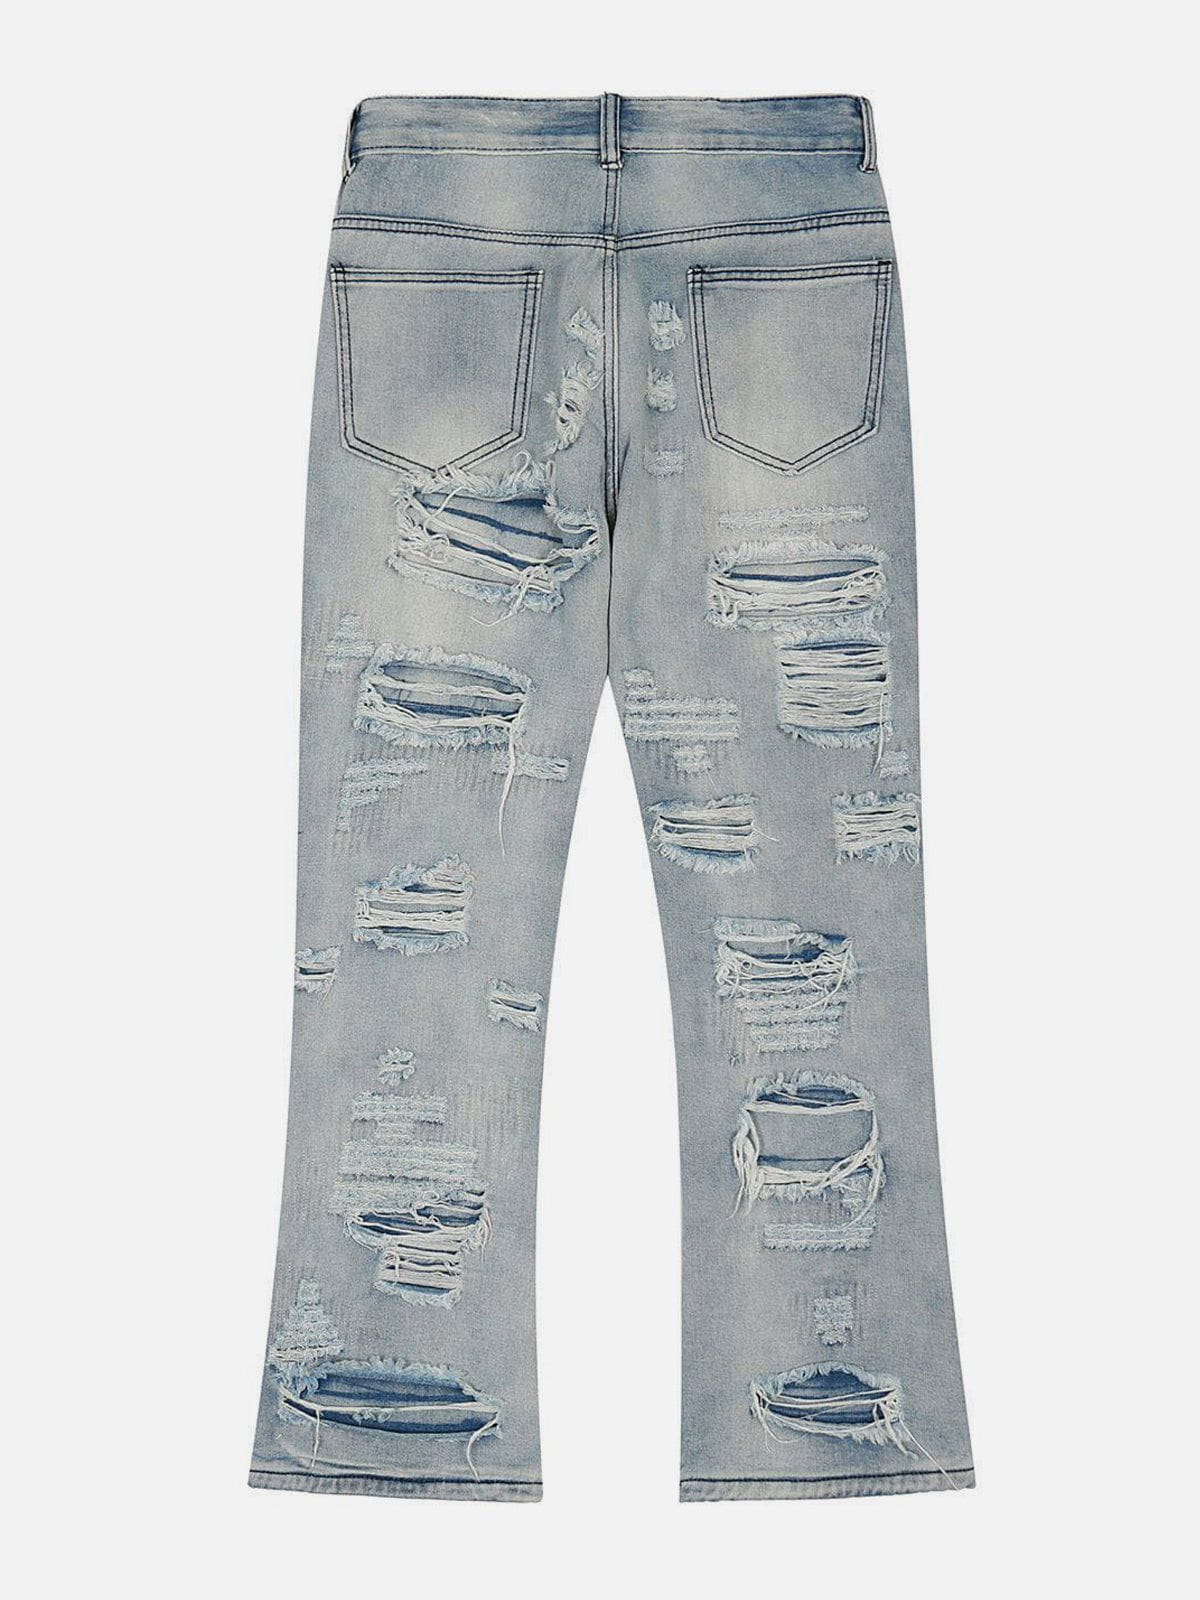 Eprezzy® - Ripped Hole Jeans Streetwear Fashion - eprezzy.com